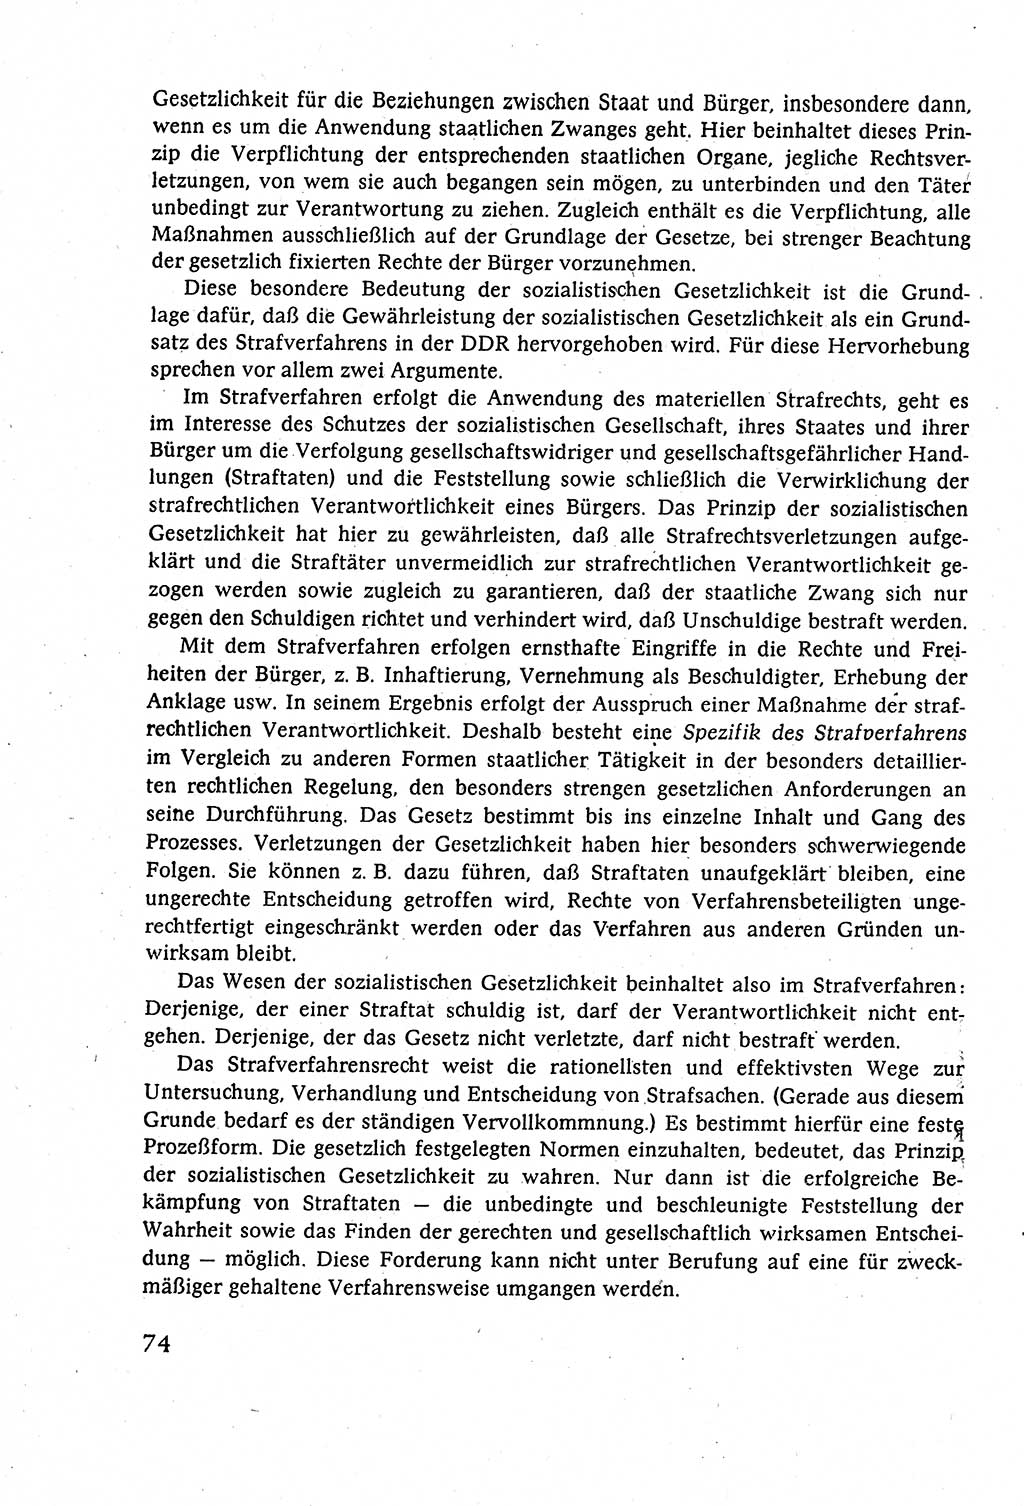 Strafverfahrensrecht [Deutsche Demokratische Republik (DDR)], Lehrbuch 1977, Seite 74 (Strafverf.-R. DDR Lb. 1977, S. 74)